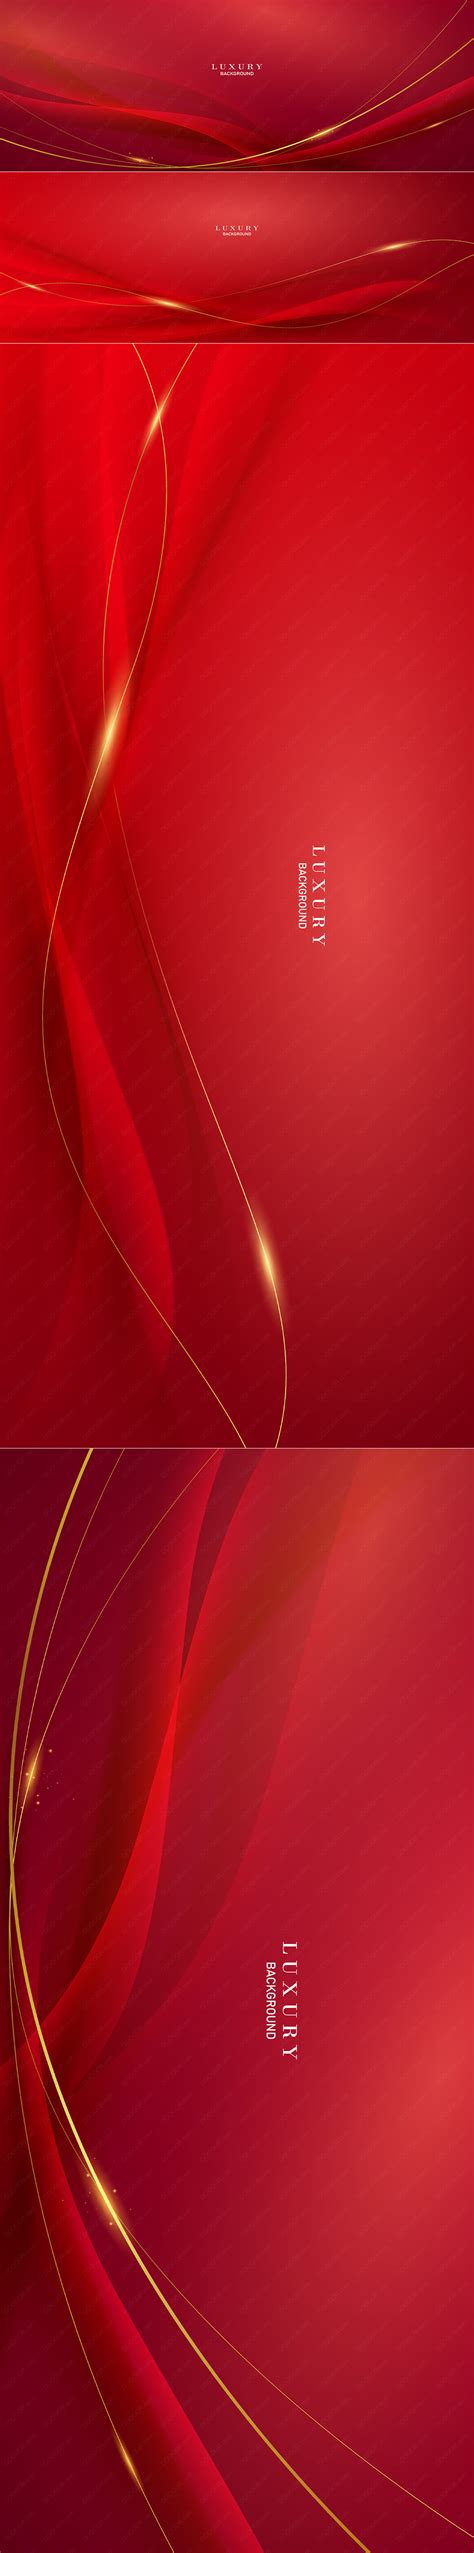 商务红色背景素材-商务红色背景模板-商务红色背景图片免费下载-设图网